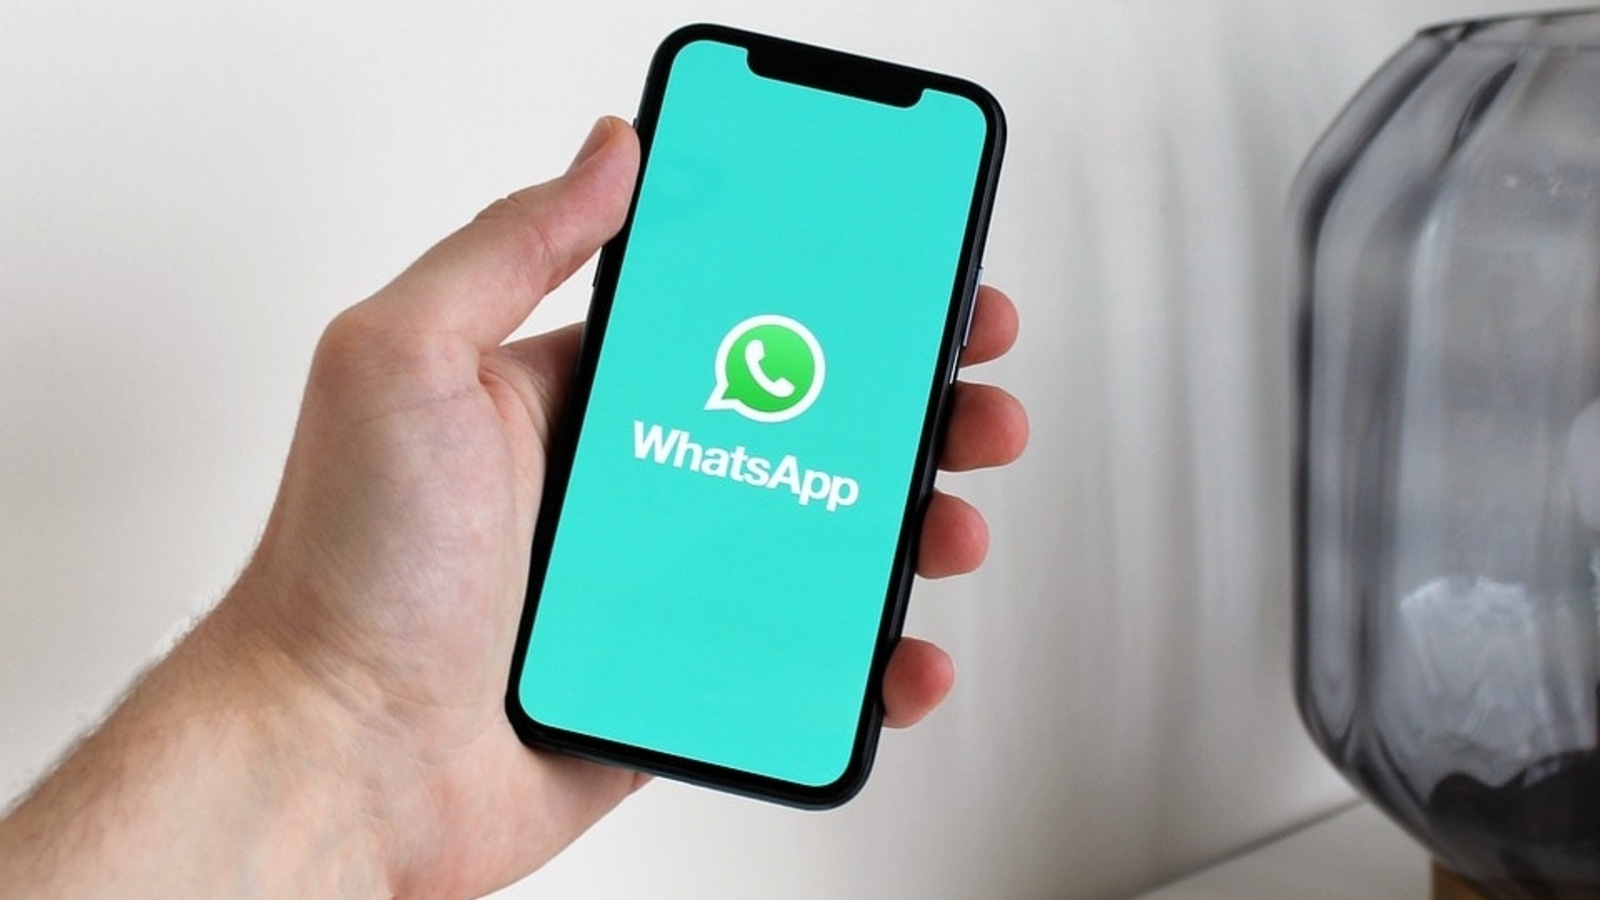 De WhatsApp-contactkaartfunctie is nu beschikbaar voor enkele gelukkige gebruikers